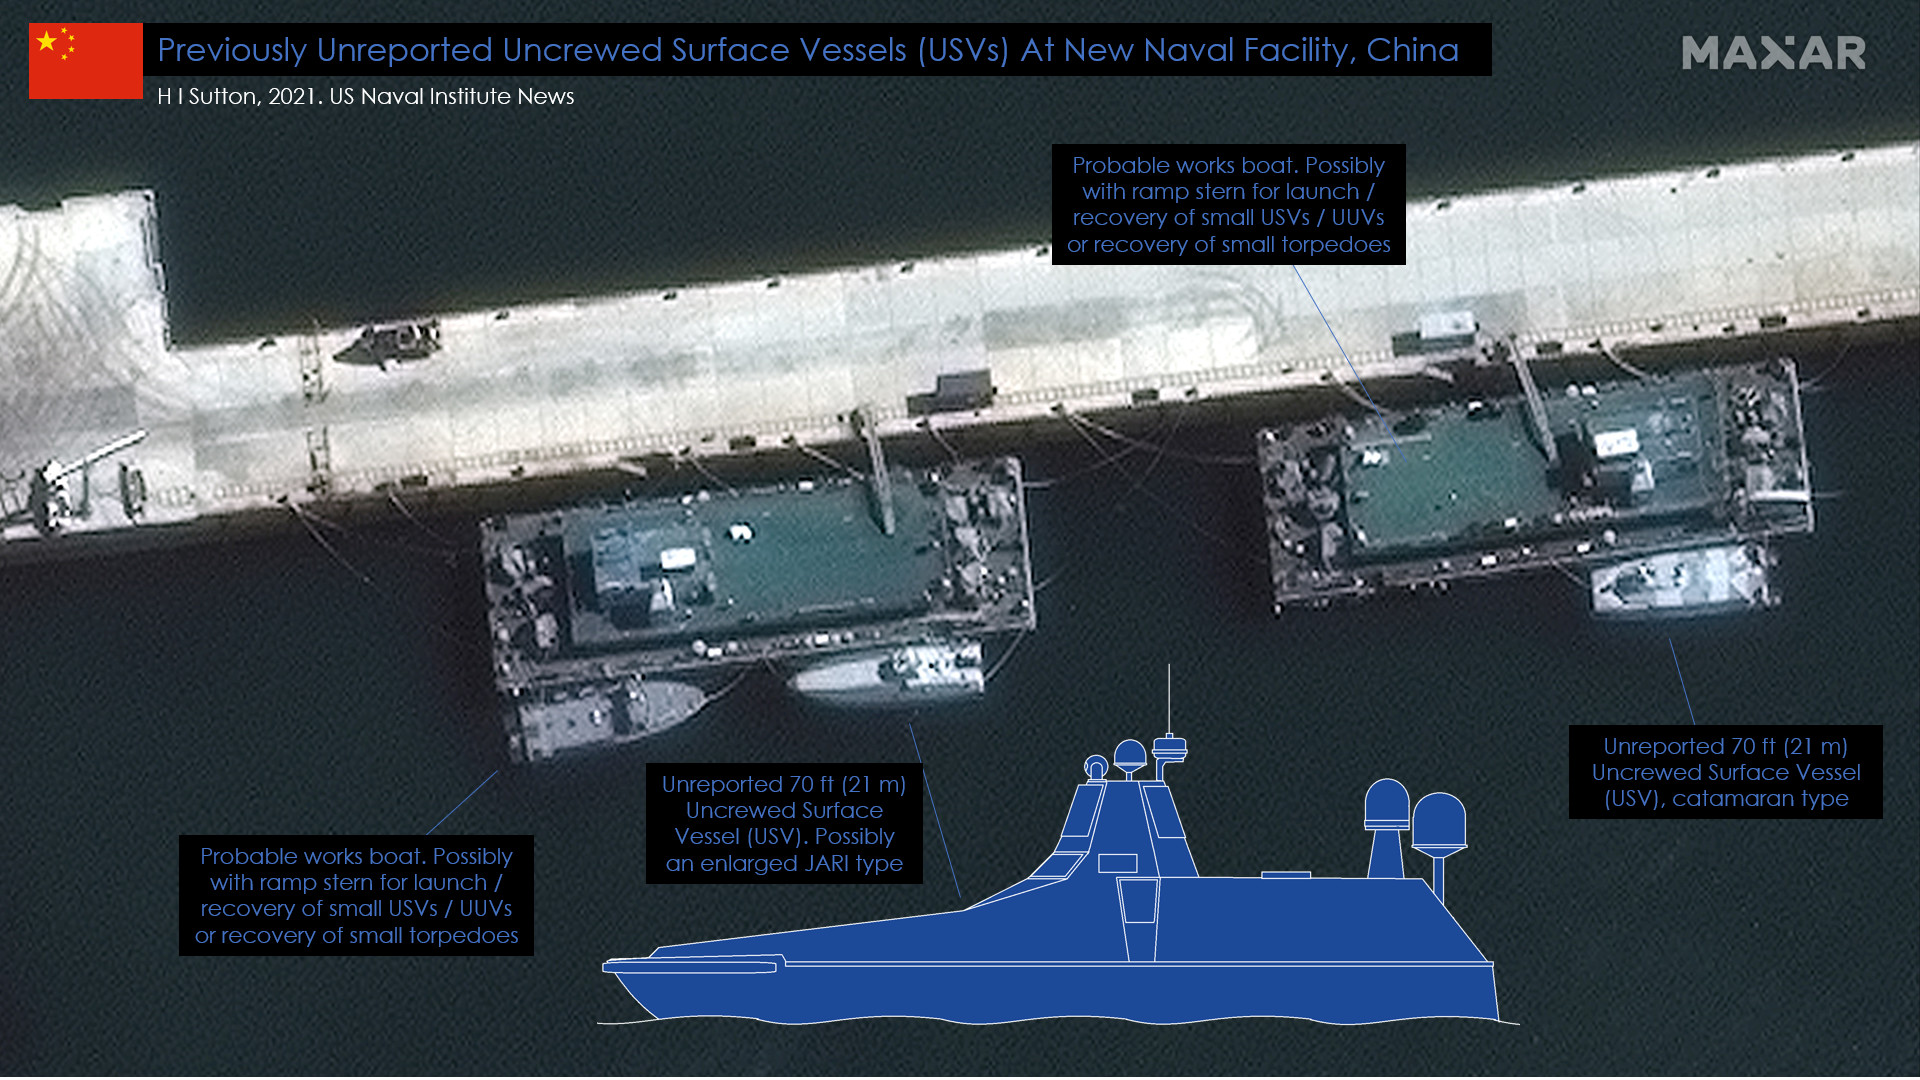 fuerza - Fuerzas armadas de la República Popular China - Página 15 China-Navy-New-Base-Unreported-USVs